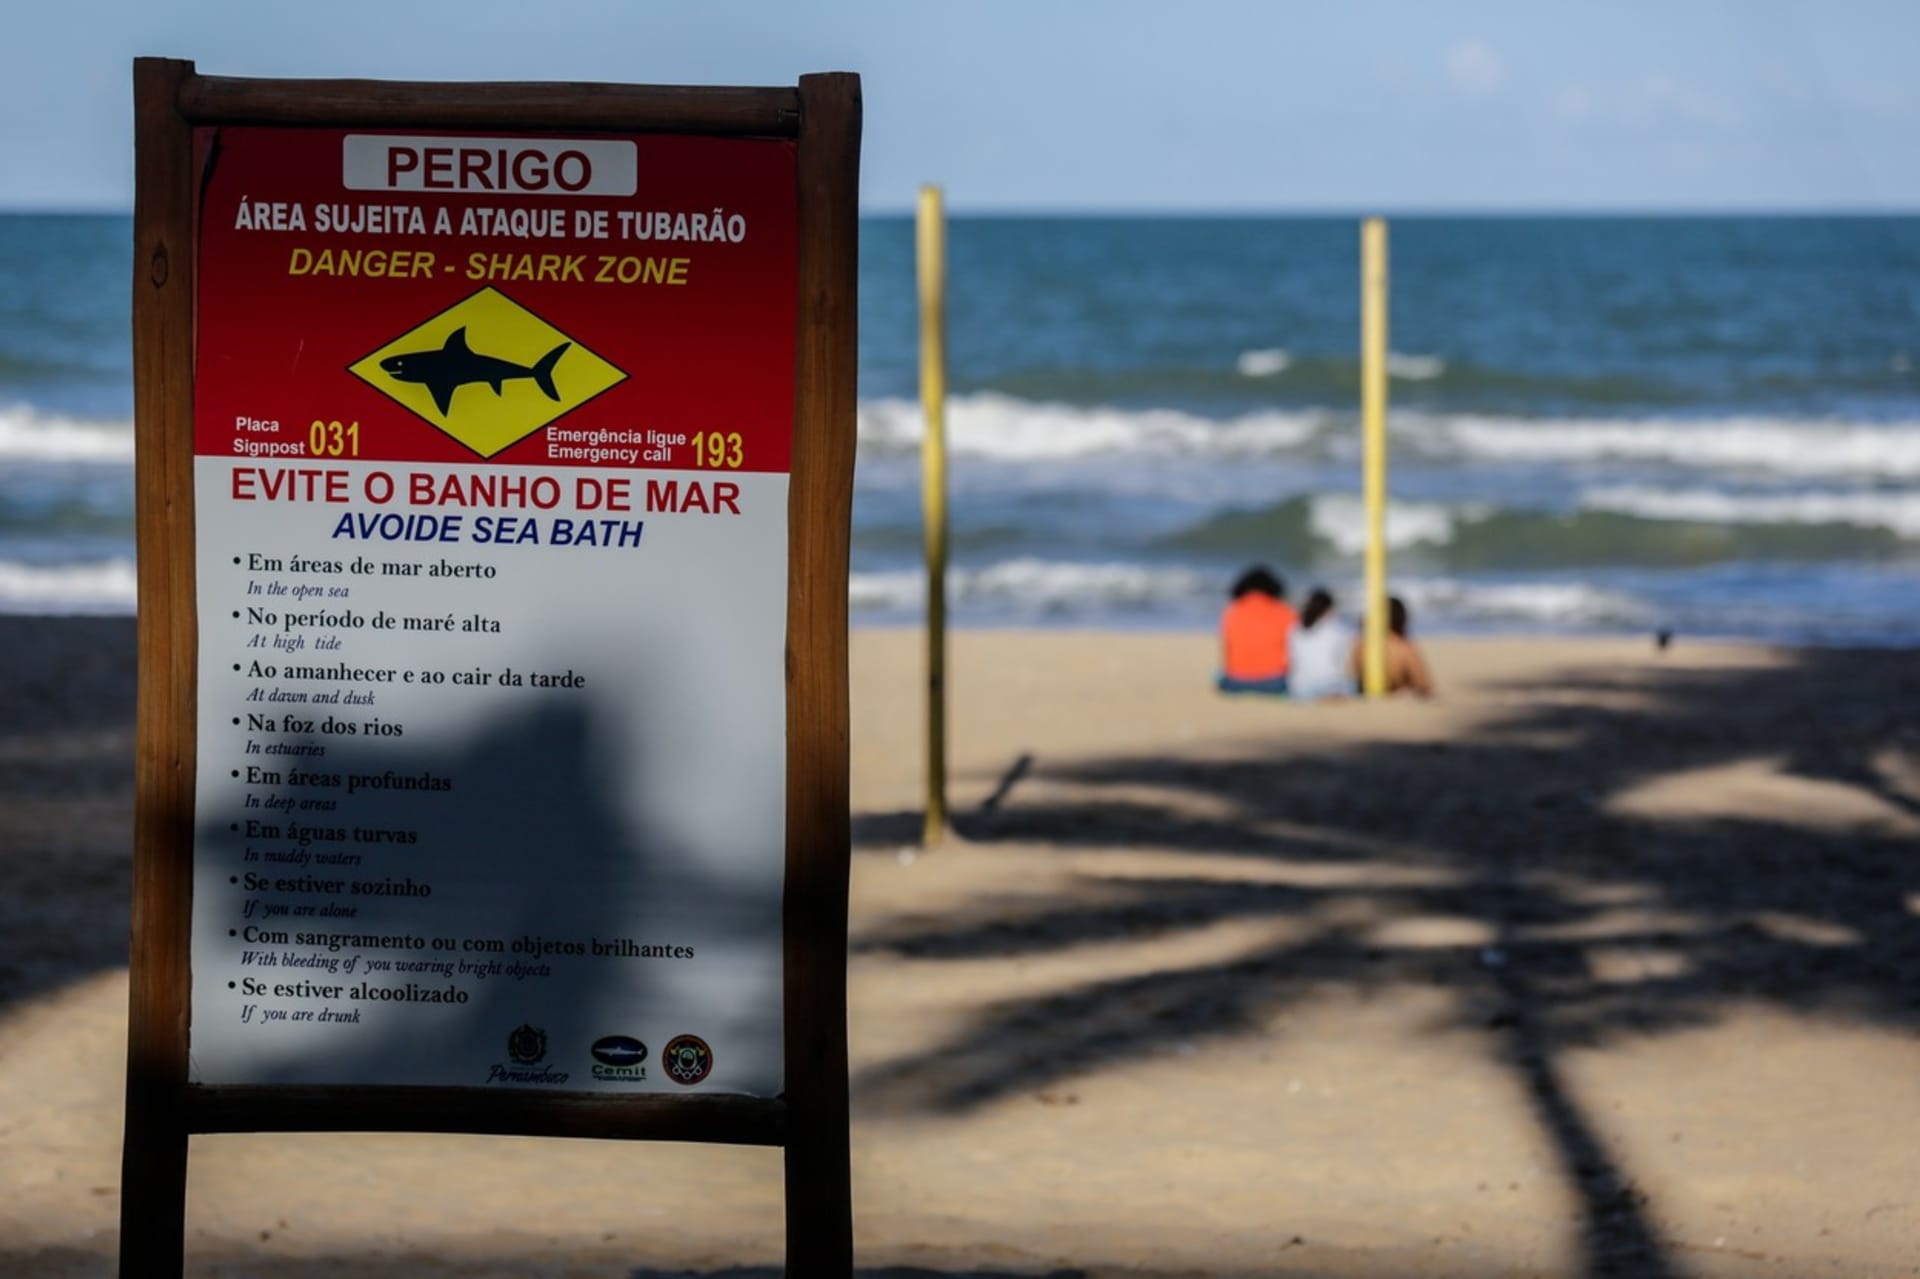 Dva útoky žraloka na člověka během 24 hodin se odehrály na brazilské pláži Piedade ve městě Recife.